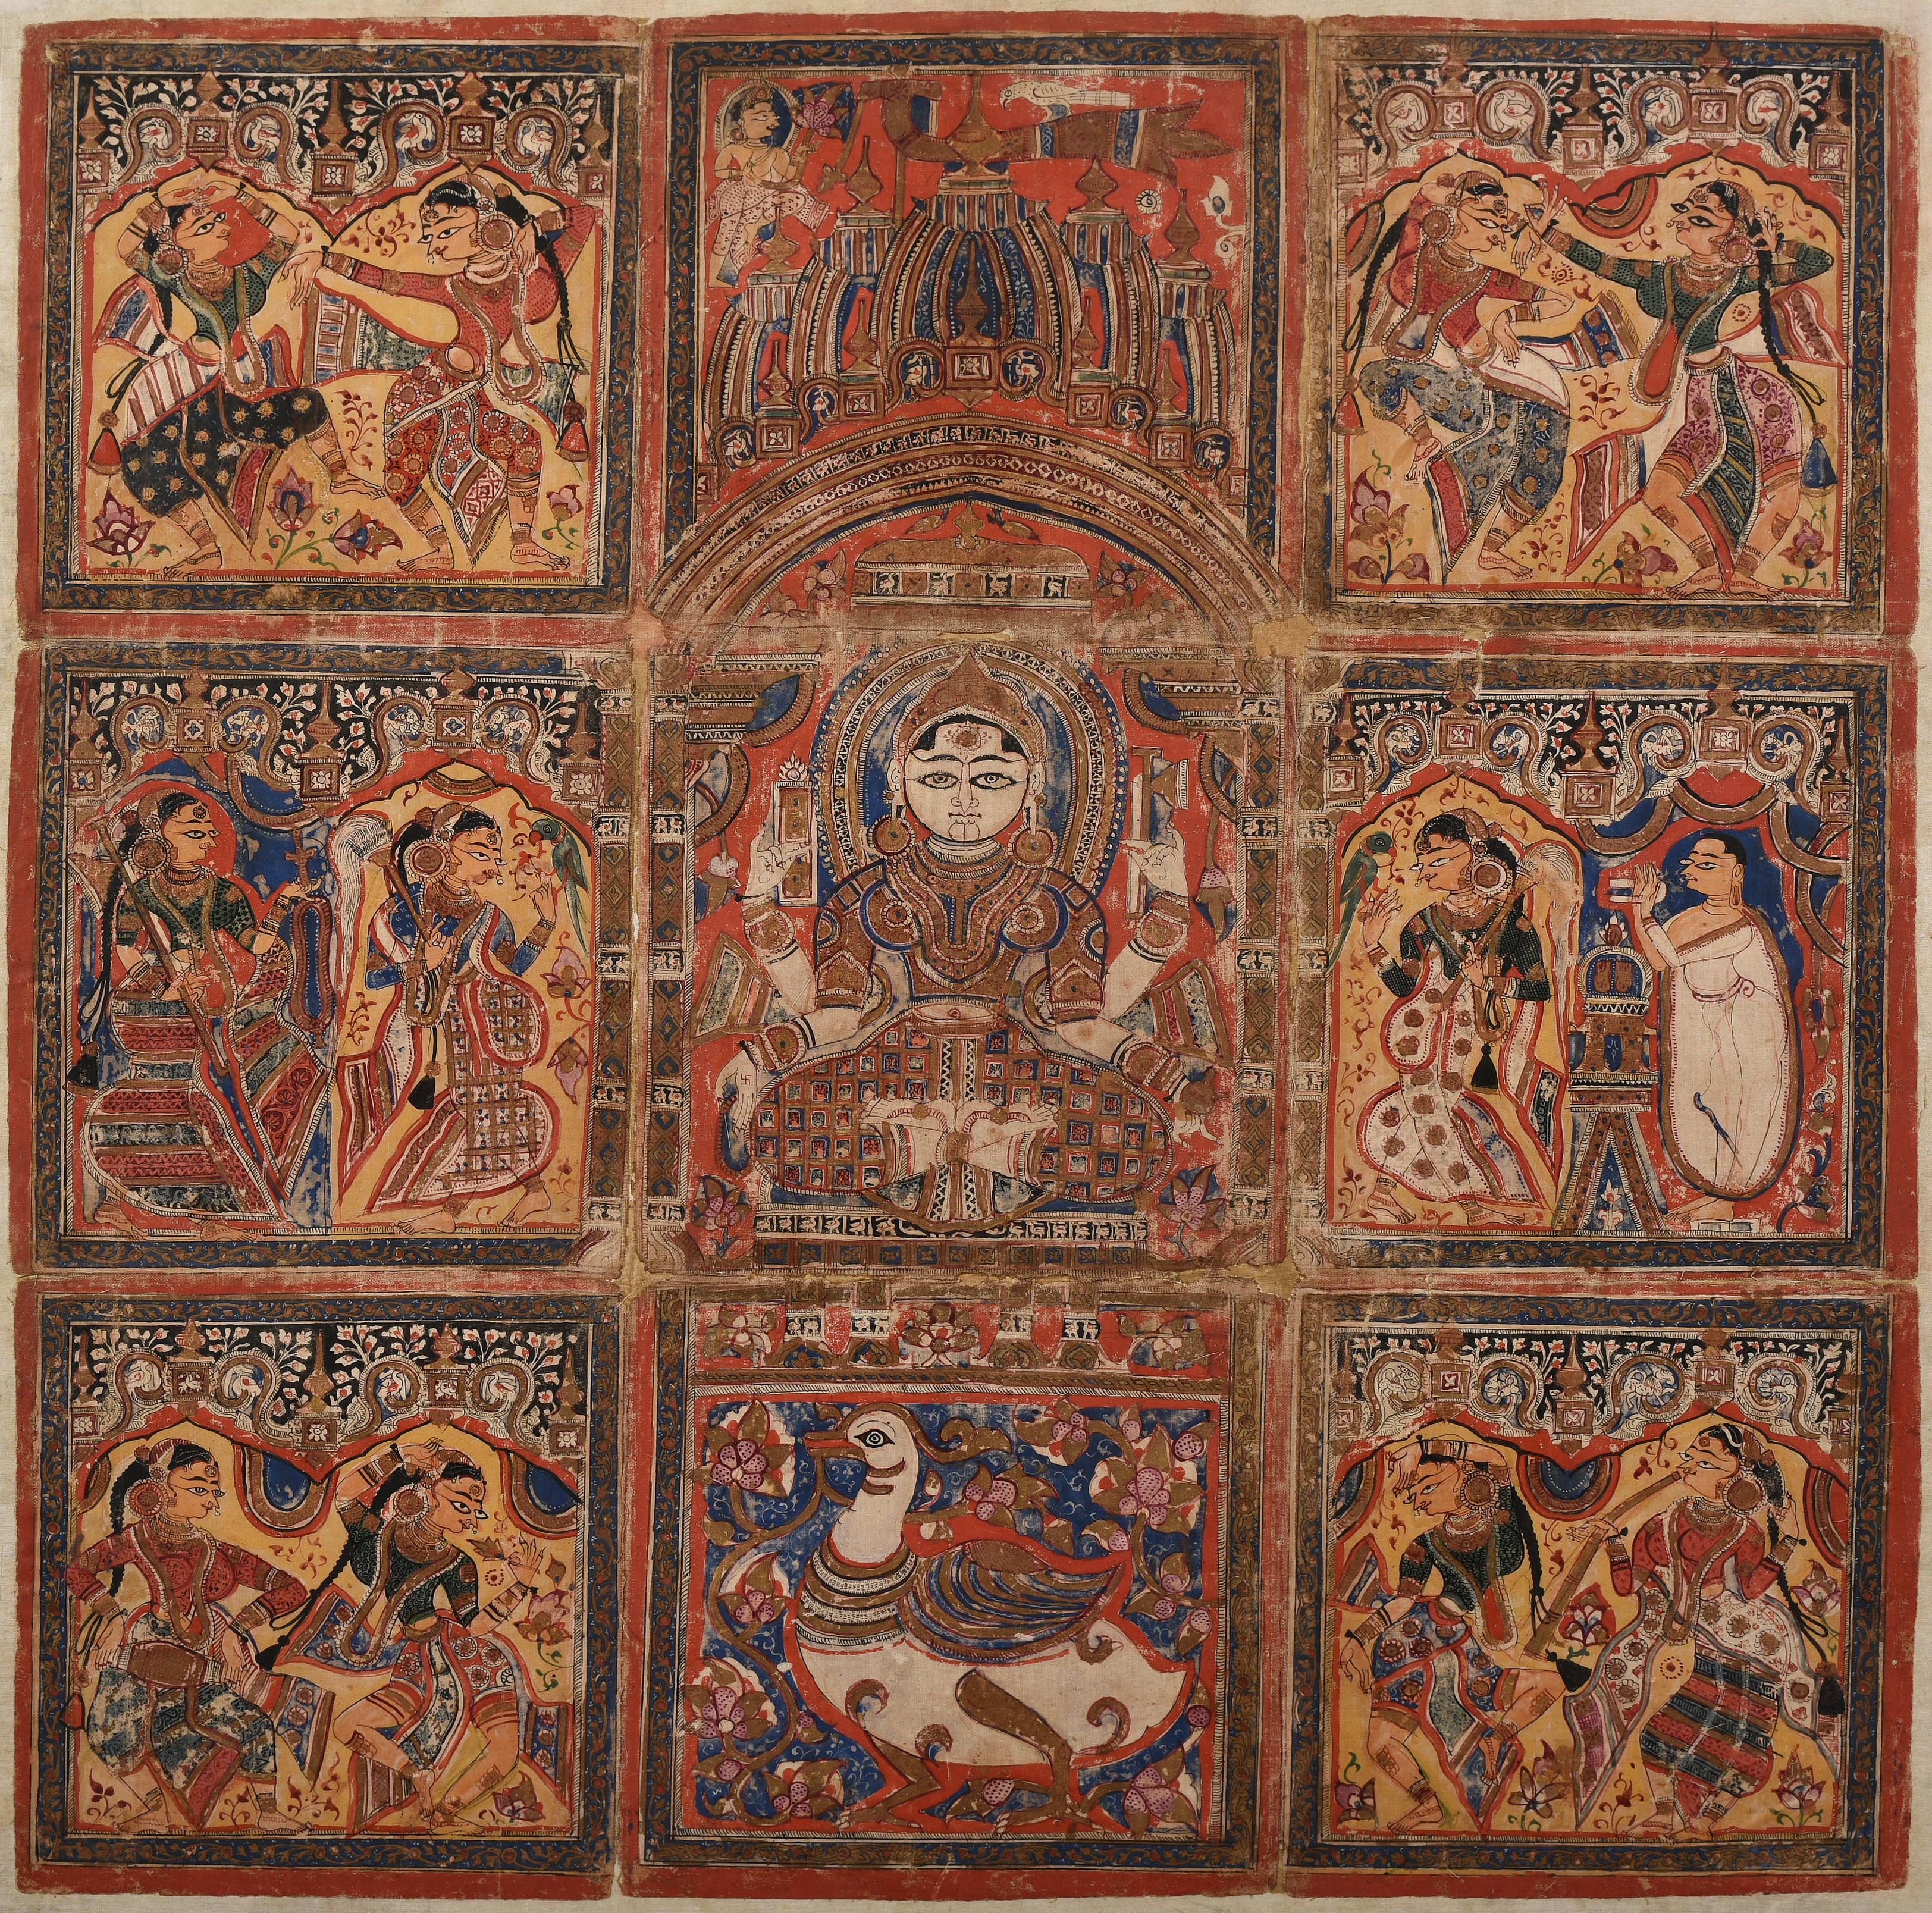 Saraswati Pata by Artista Desconhecido - c. 1475-1500 - 54,8 x 44,5 cm 